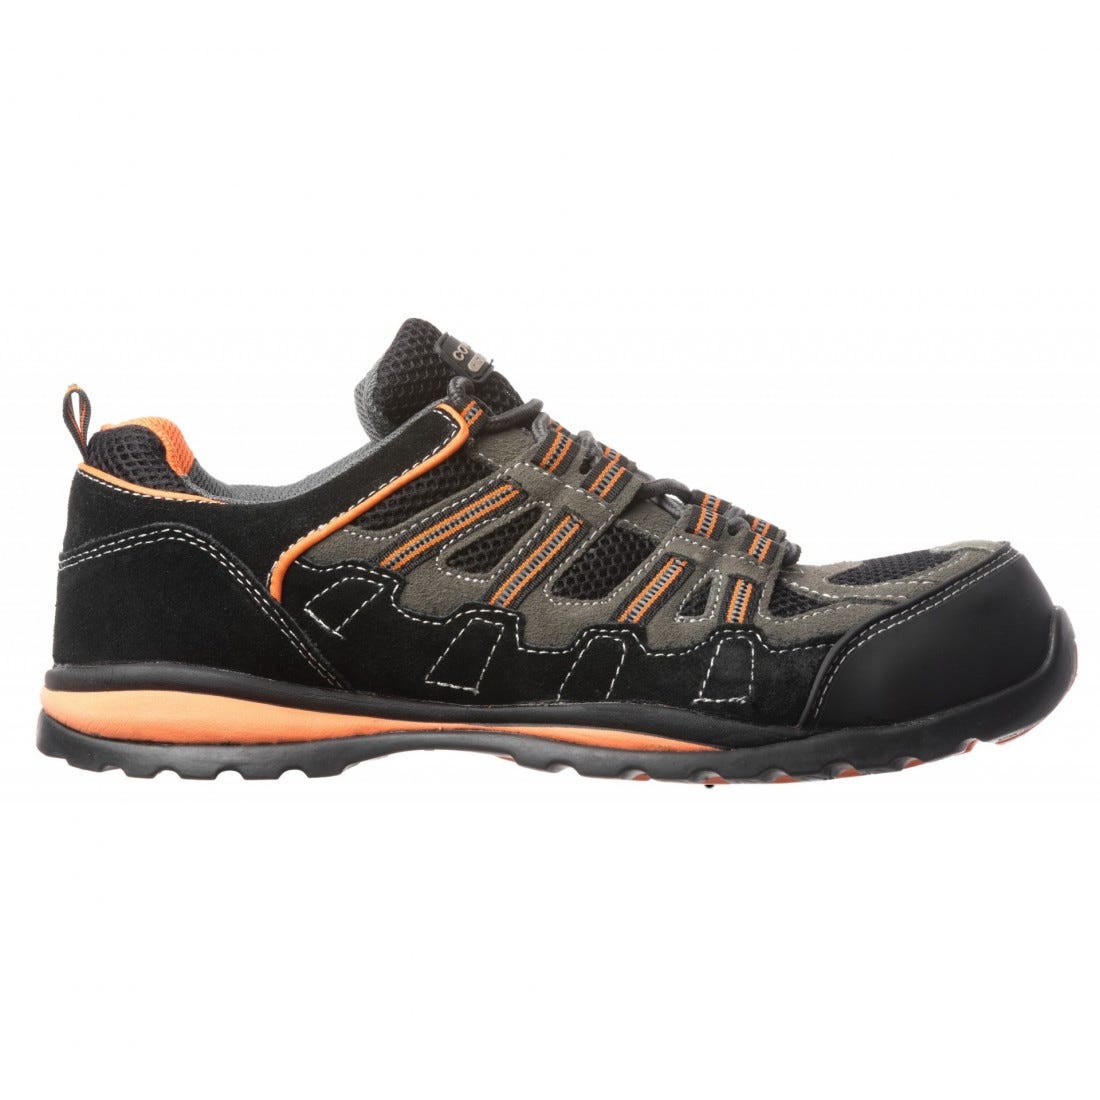 Chaussures de sécurité HELVITE S1P composite noir/orange - COVERGUARD - Taille 40 1